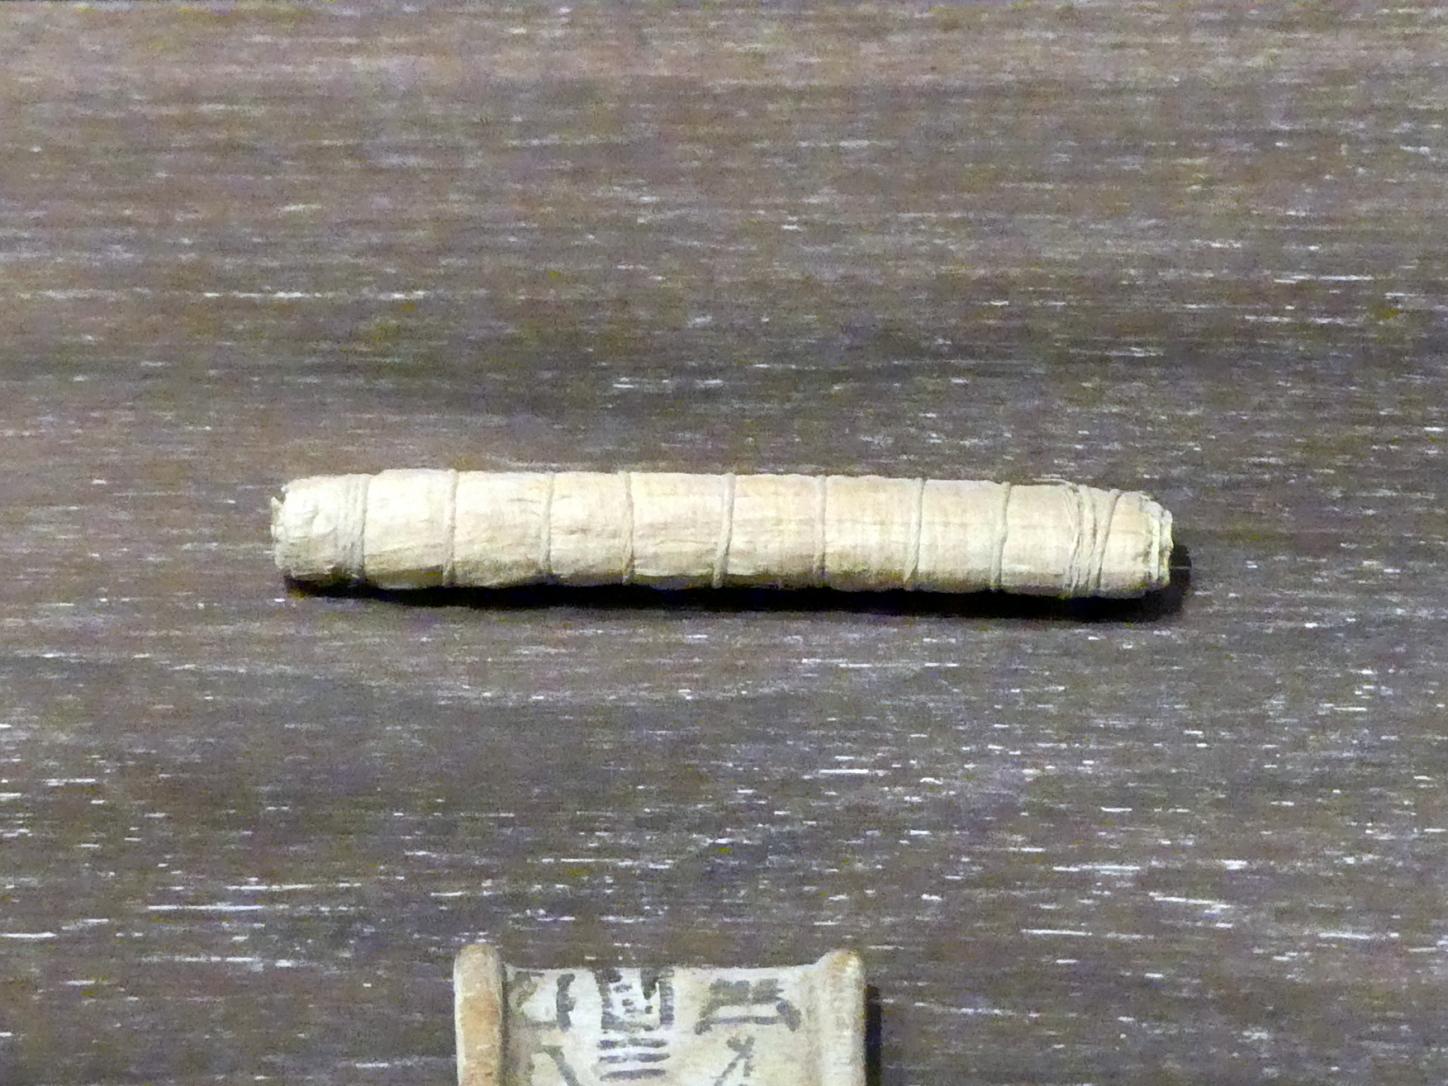 Verschnürte Papyrusrolle als Amulett, Ptolemäische Zeit, 400 v. Chr. - 1 n. Chr., 200 - 100 v. Chr., Bild 1/2